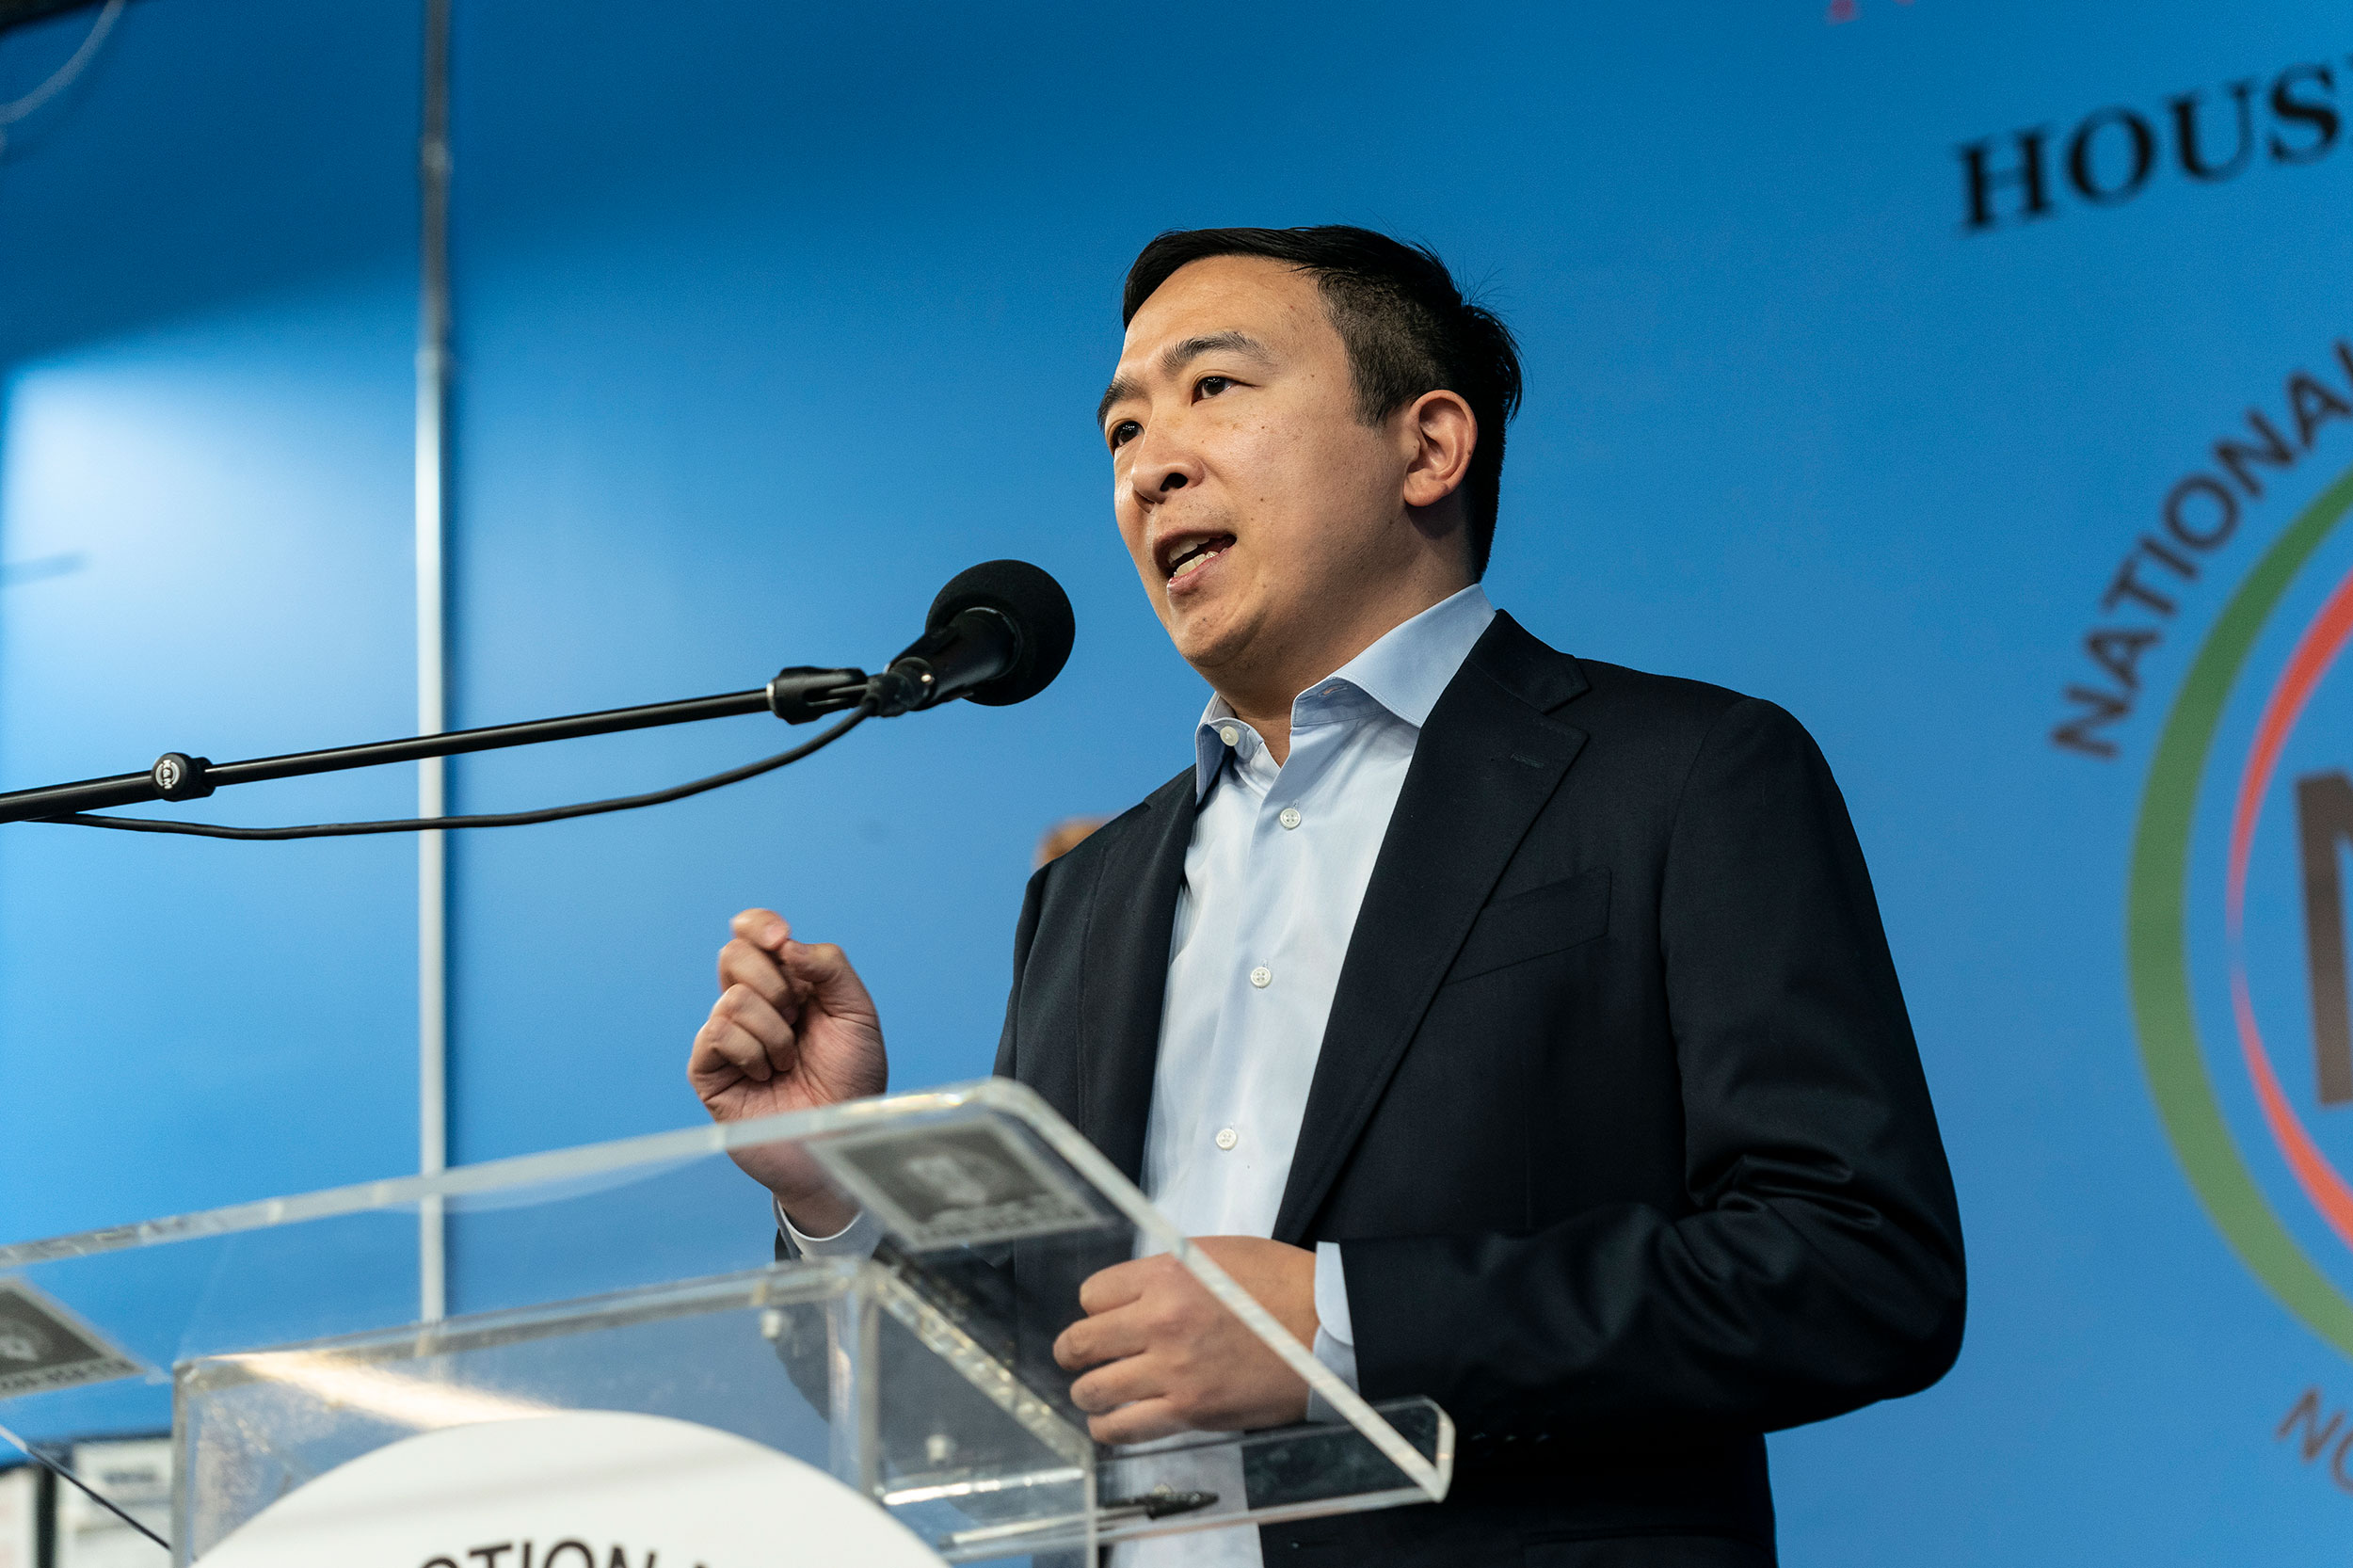 Andrew Yang speaks in New York on January 18.